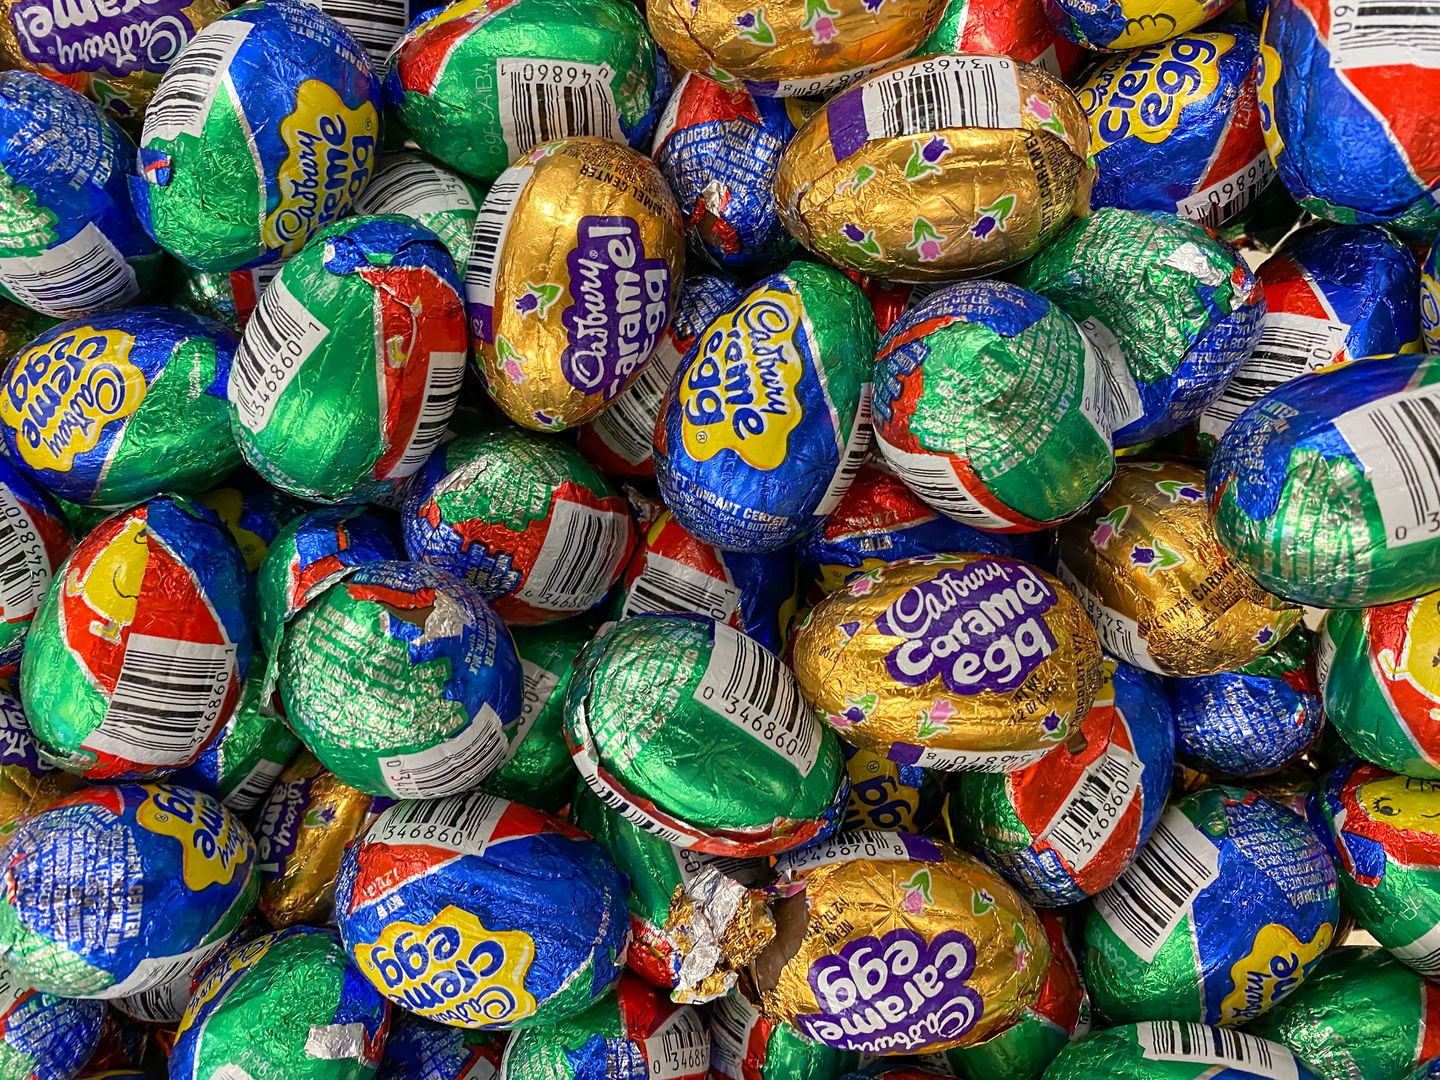 İngiliz, 200.000 Cadbury kremalı yumurta çalmaktan suçlu bulundu